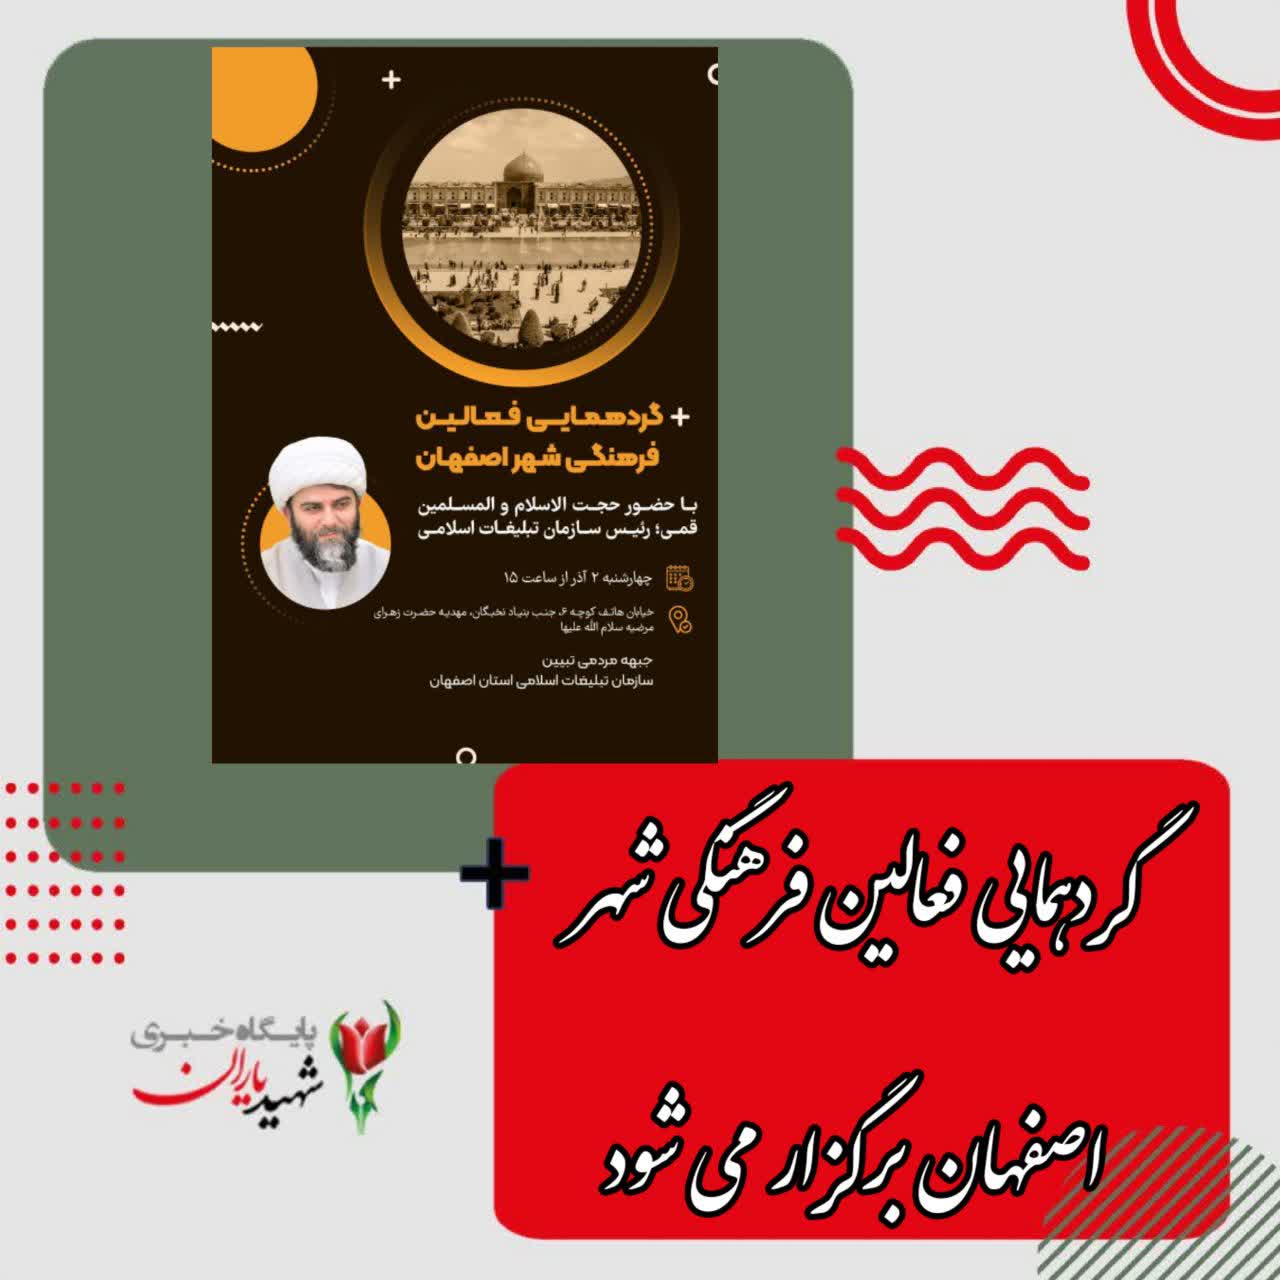 گردهمایی فعالین فرهنگی شهر اصفهان برگزار می شود